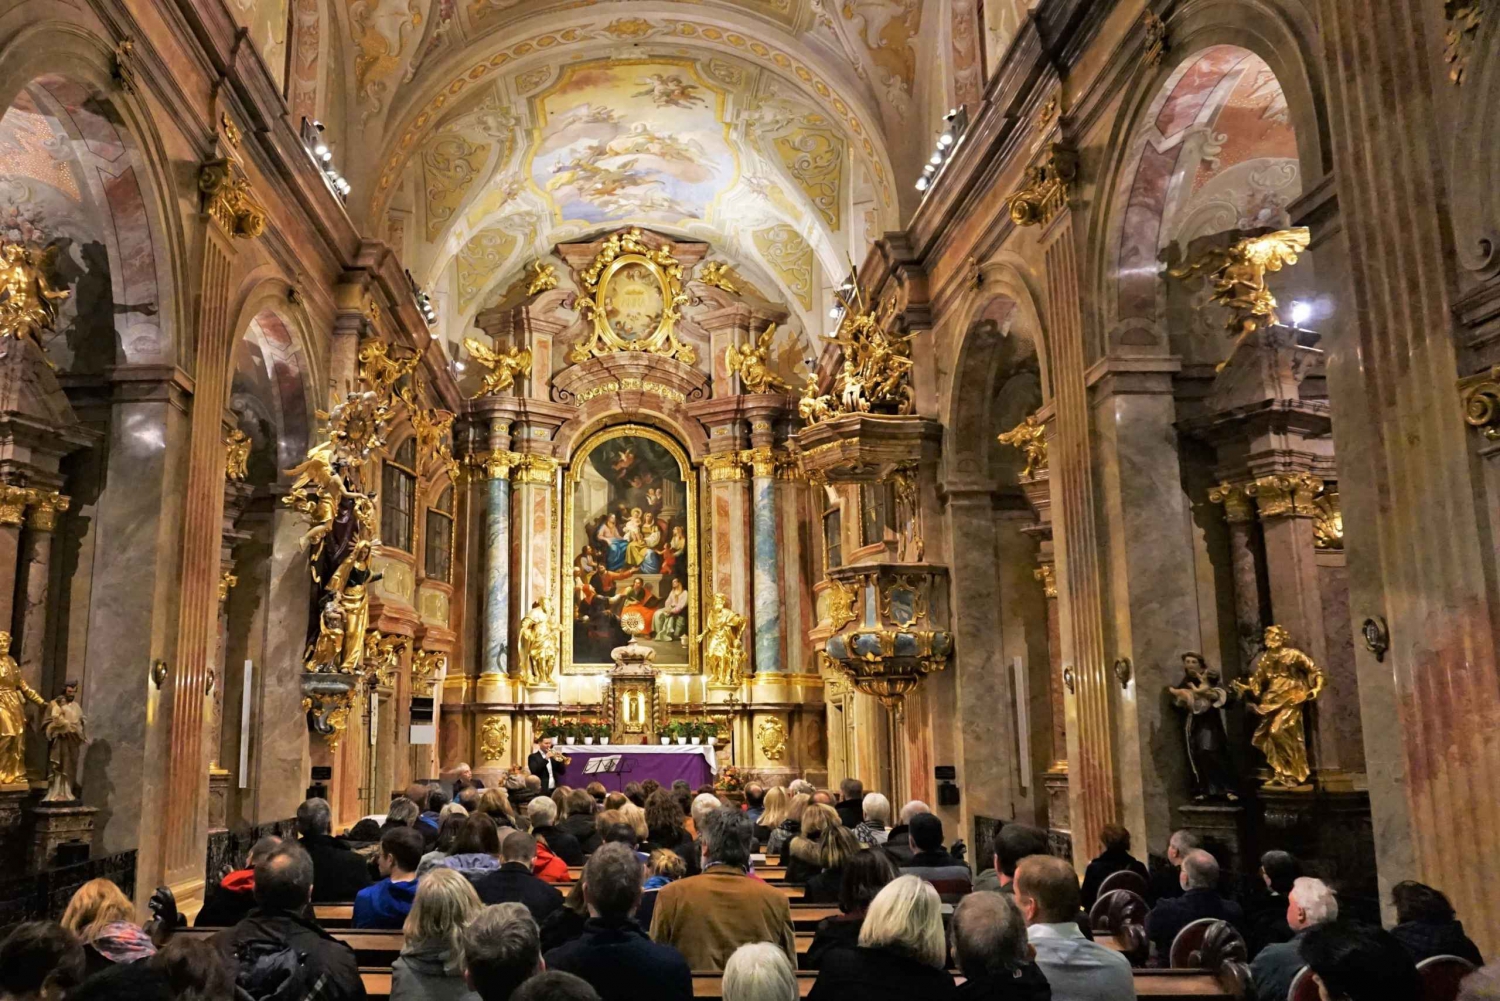 Wenen: kaartje voor kerstconcert St. Anne's Church